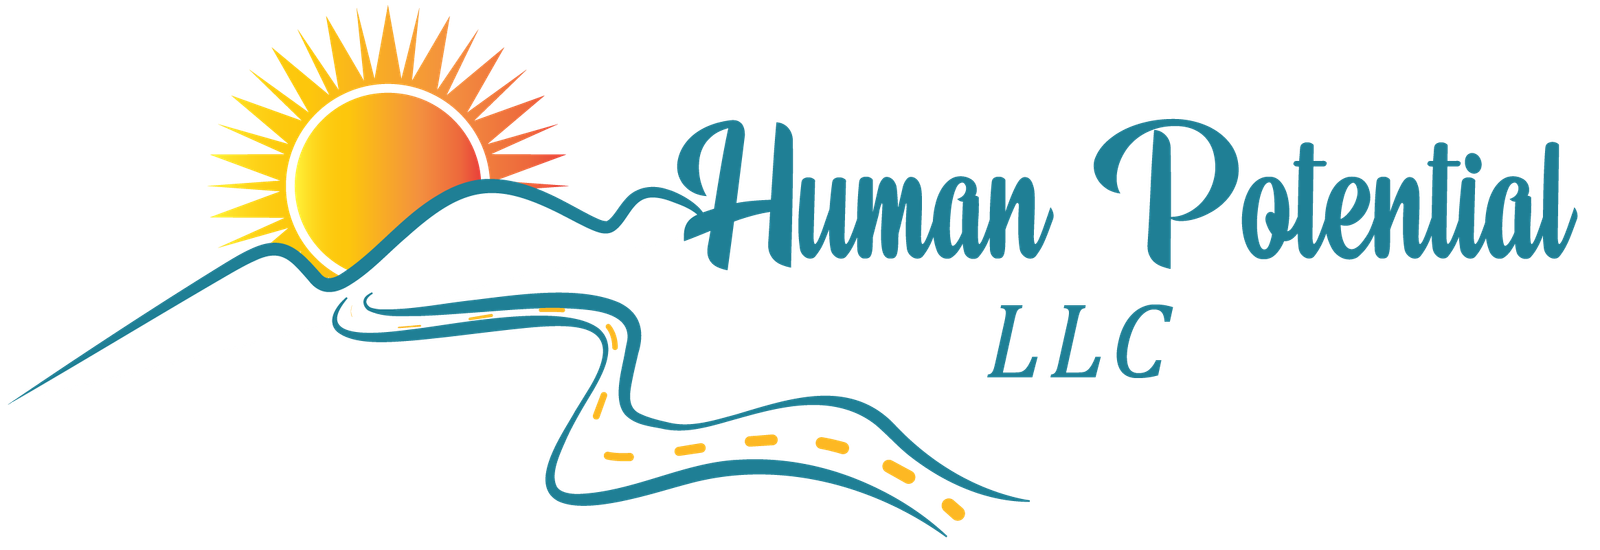 Human Potential LLC